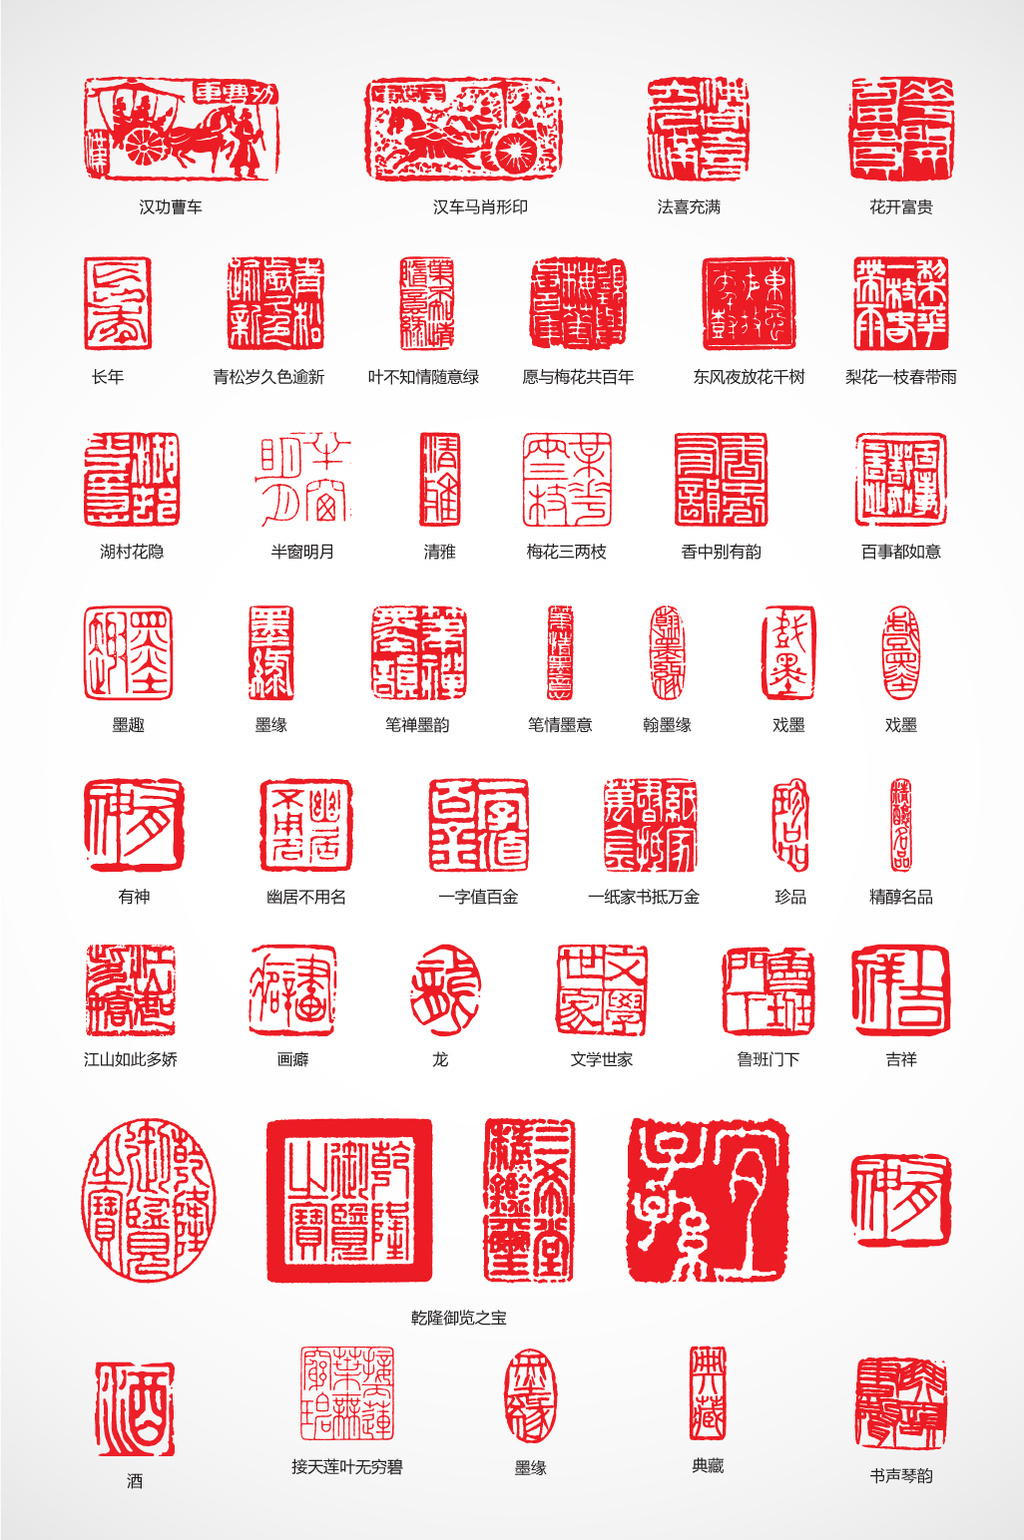 肖像权人物画像及字体仅供参考 包图网提供精美好看的古典中国风印章